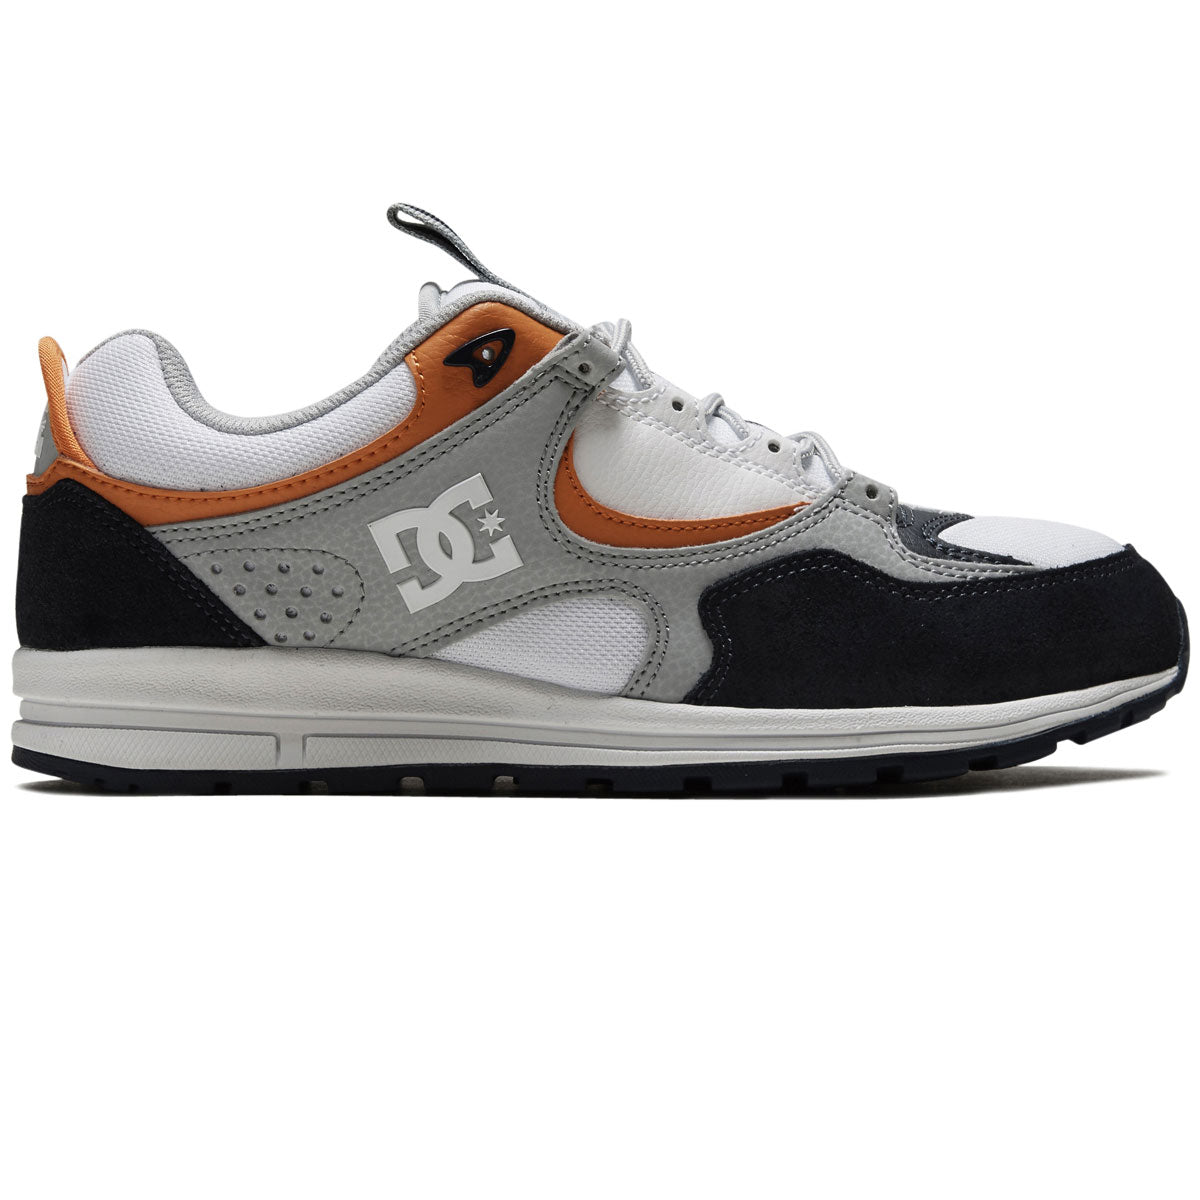 DC Kalis Lite Shoes - Navy/ Orange image 1